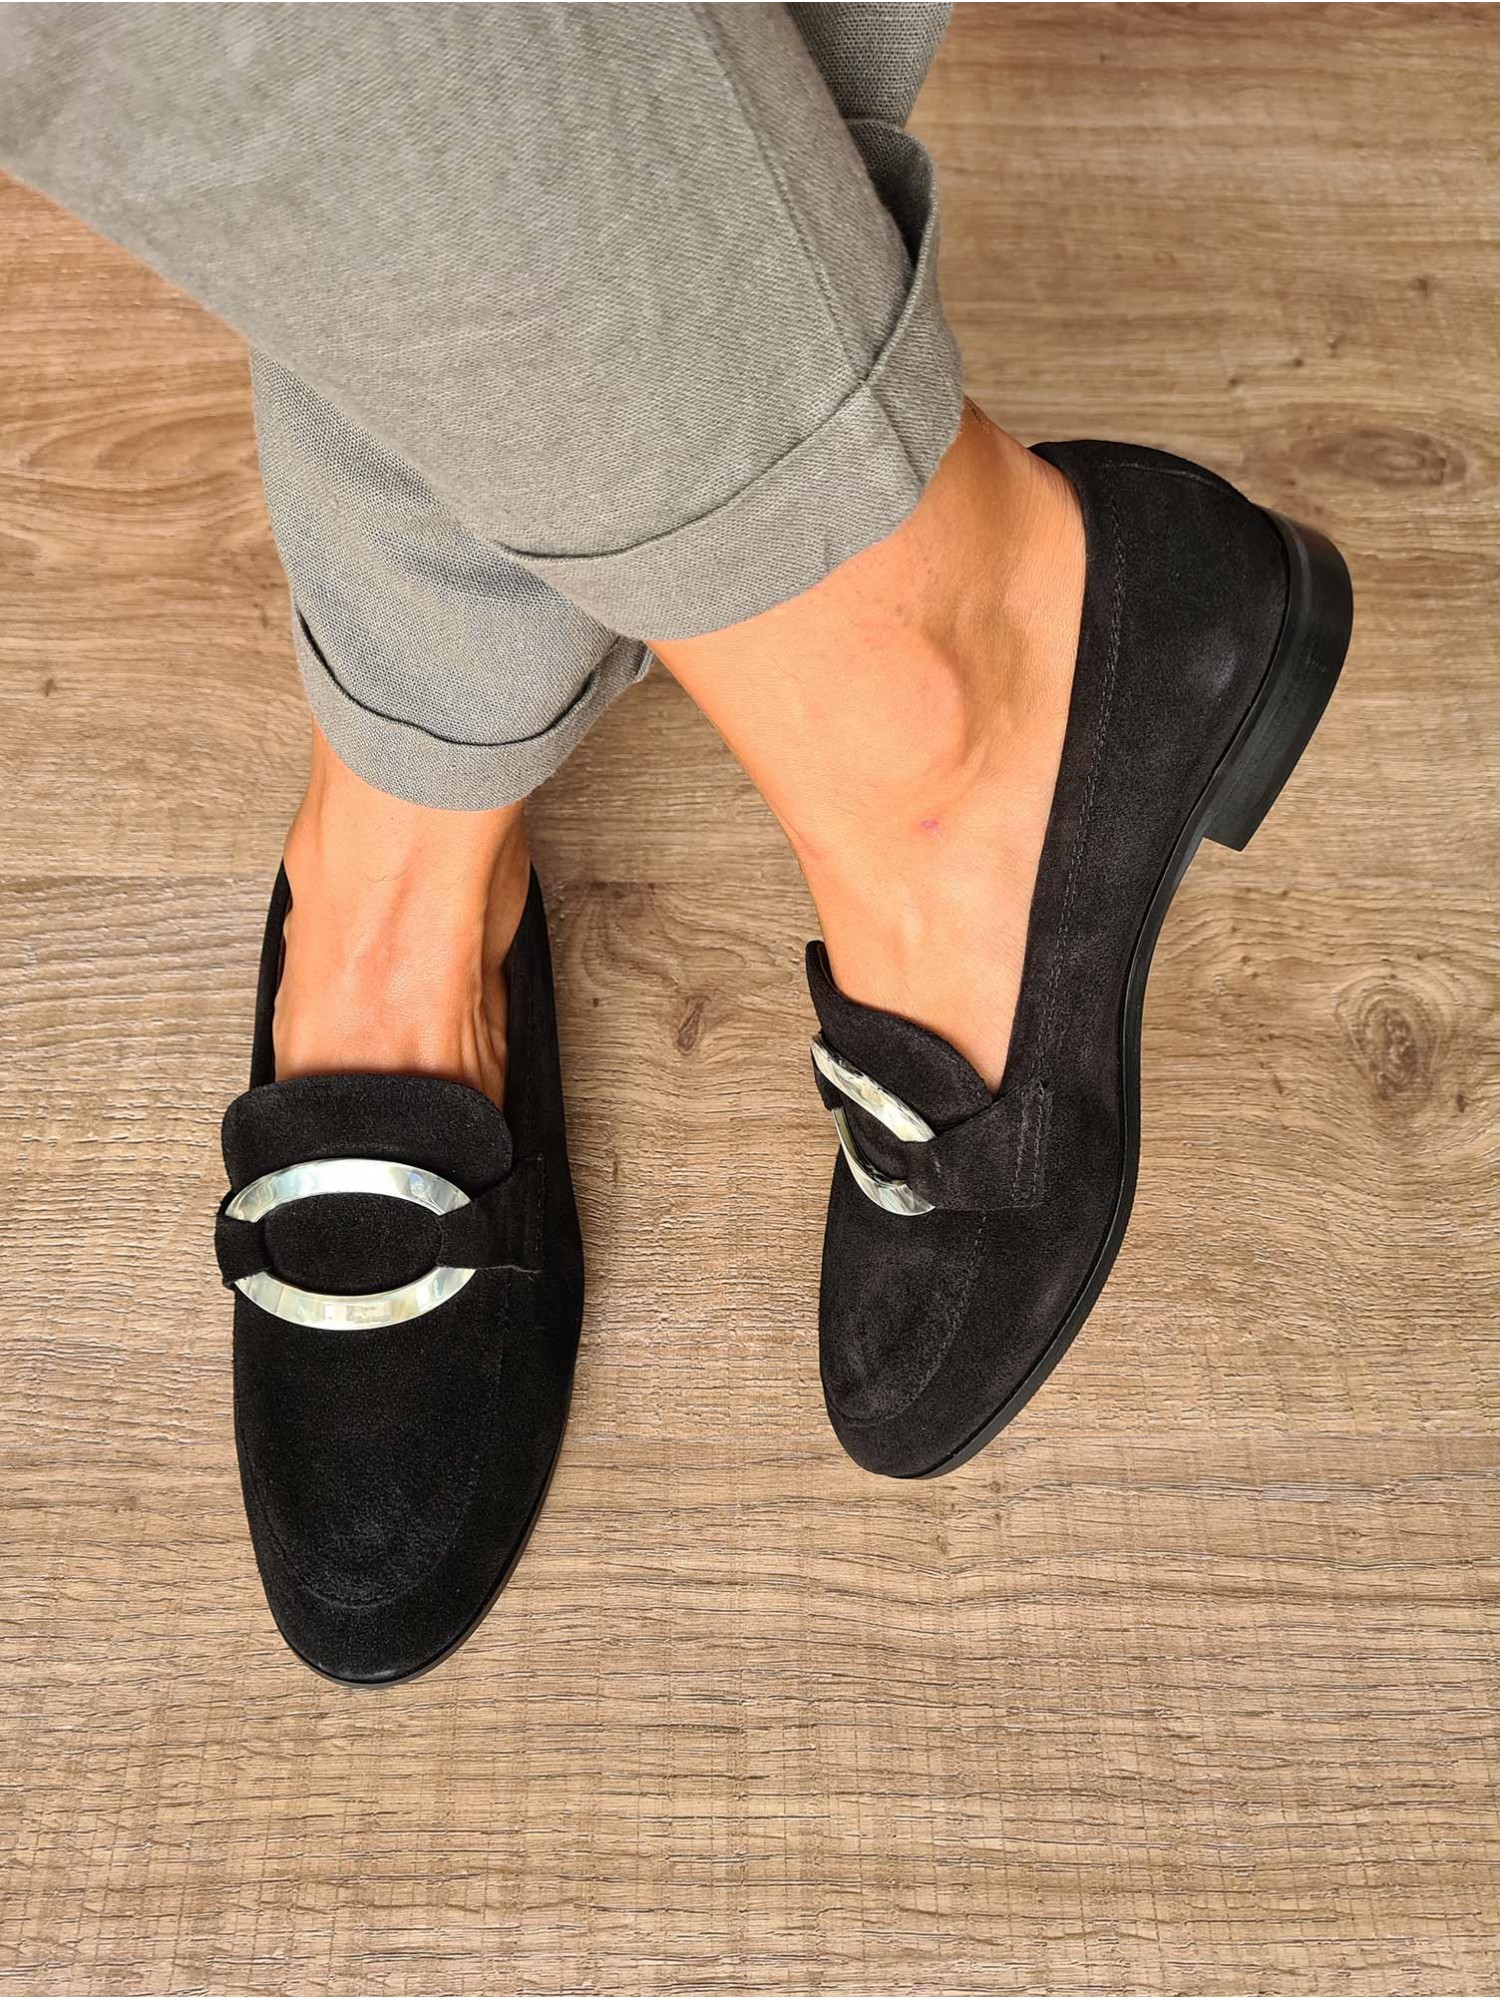 Zapato mocasín de piel serraje negro con mini tacón, detalle de nácar y suela de cuero. Fabricado en España.